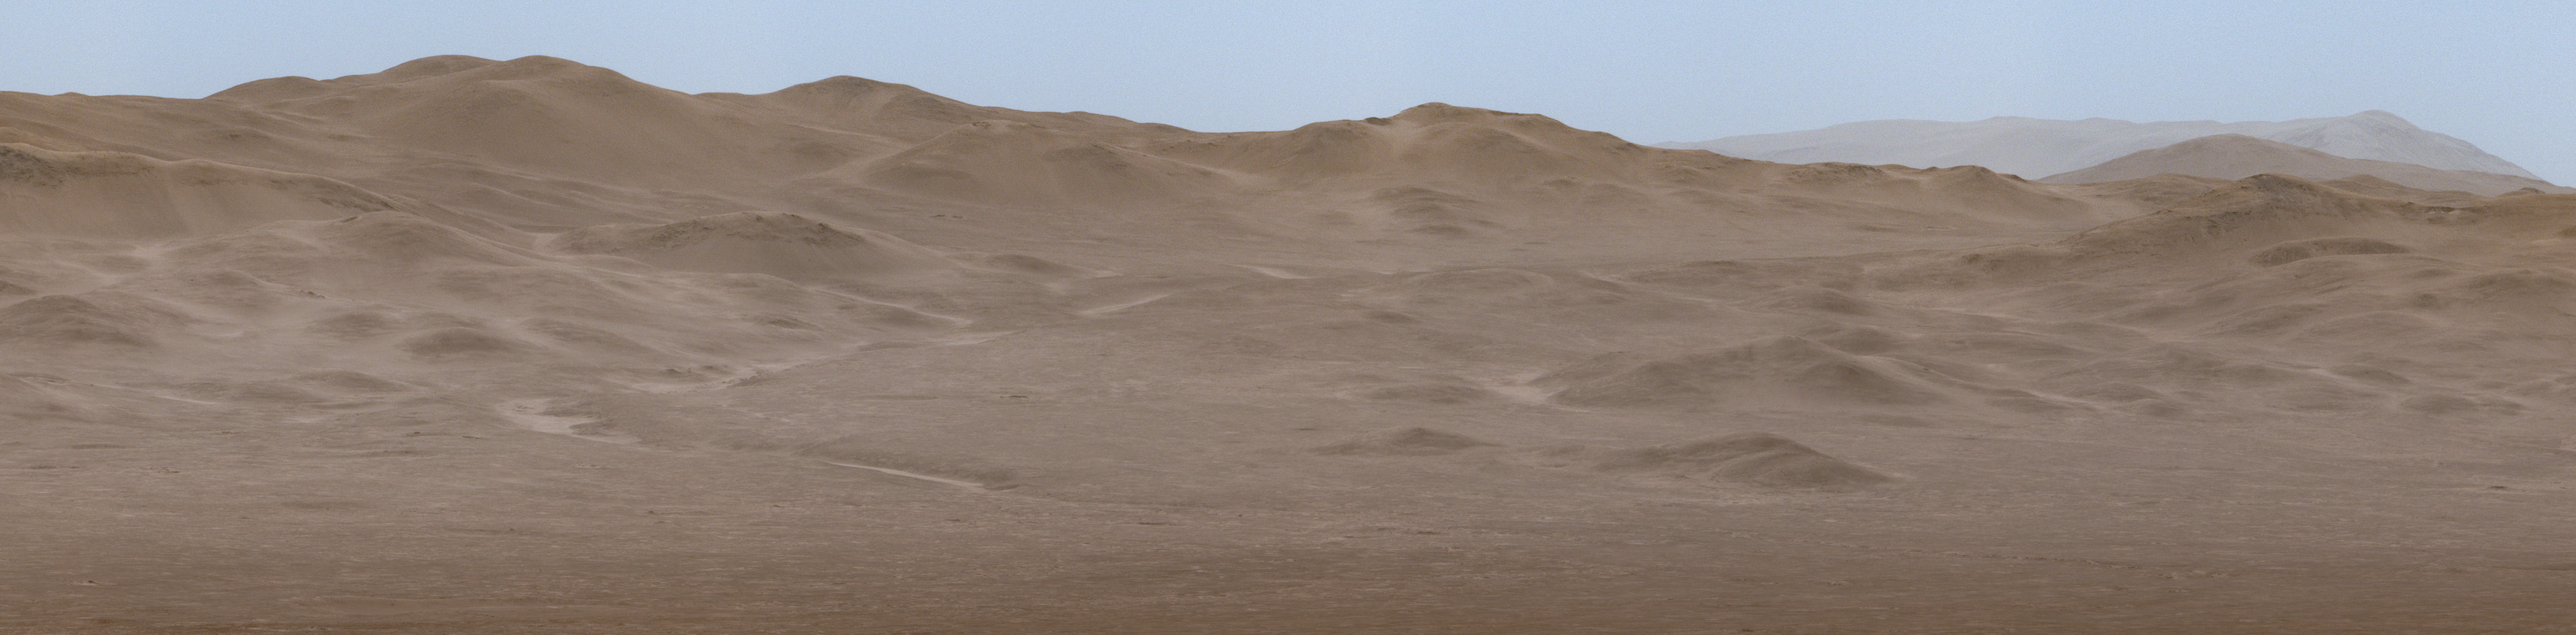 A Curiosity panorámaképének ezen részletének közepén a kráterfalon kanyargó Peace Vallis folyóvölgy látható.